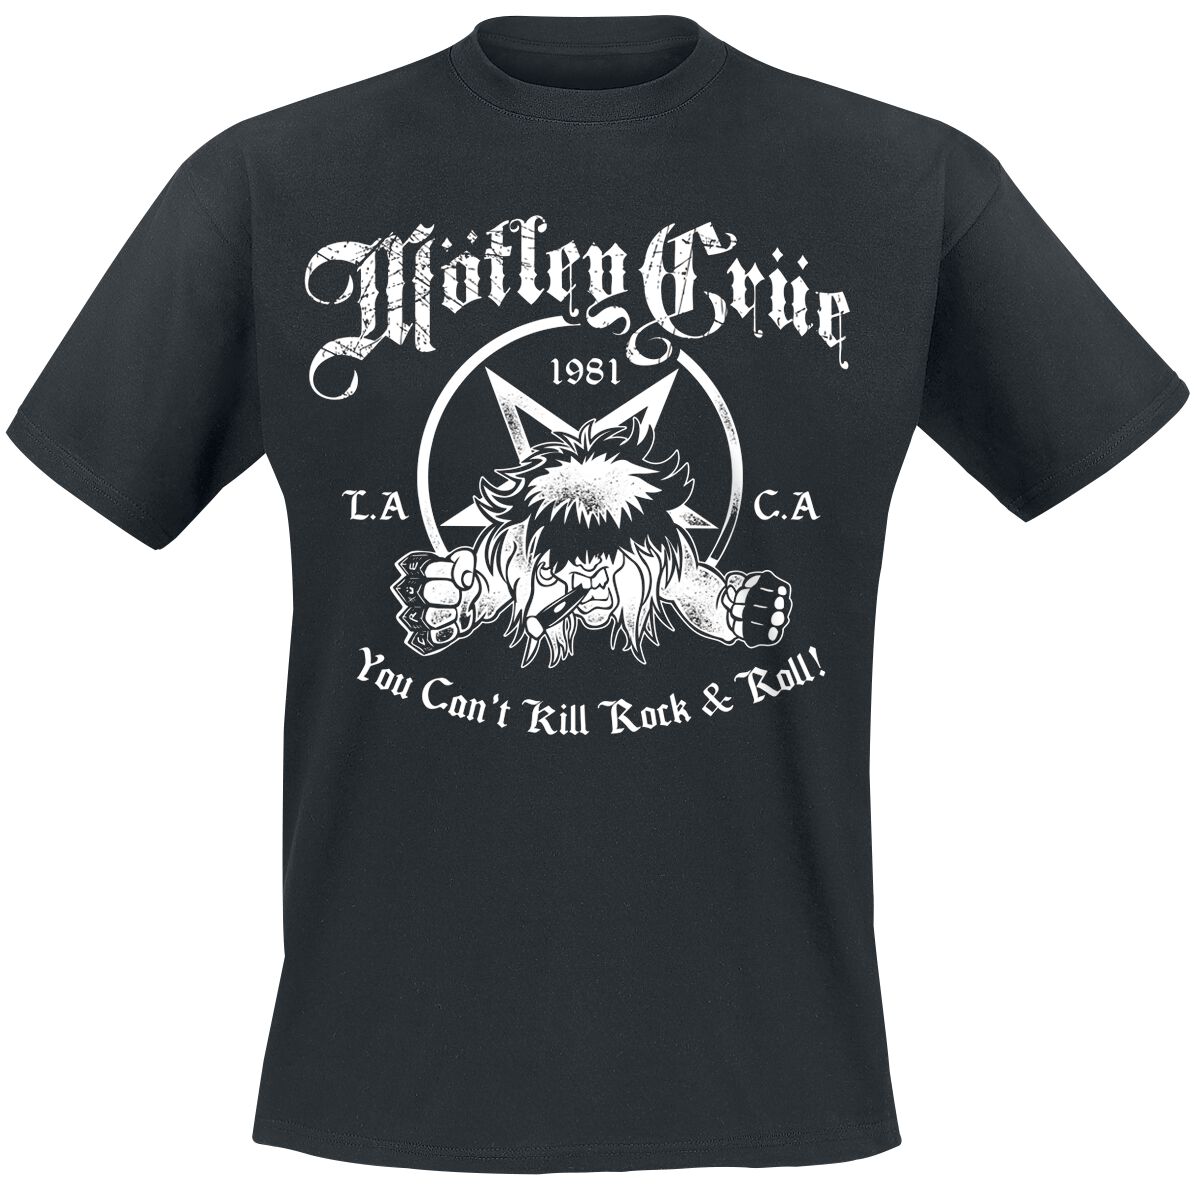 Mötley Crüe T-Shirt - You Can`t Kill Rock`n Roll - S bis XXL - für Männer - Größe M - schwarz  - Lizenziertes Merchandise!